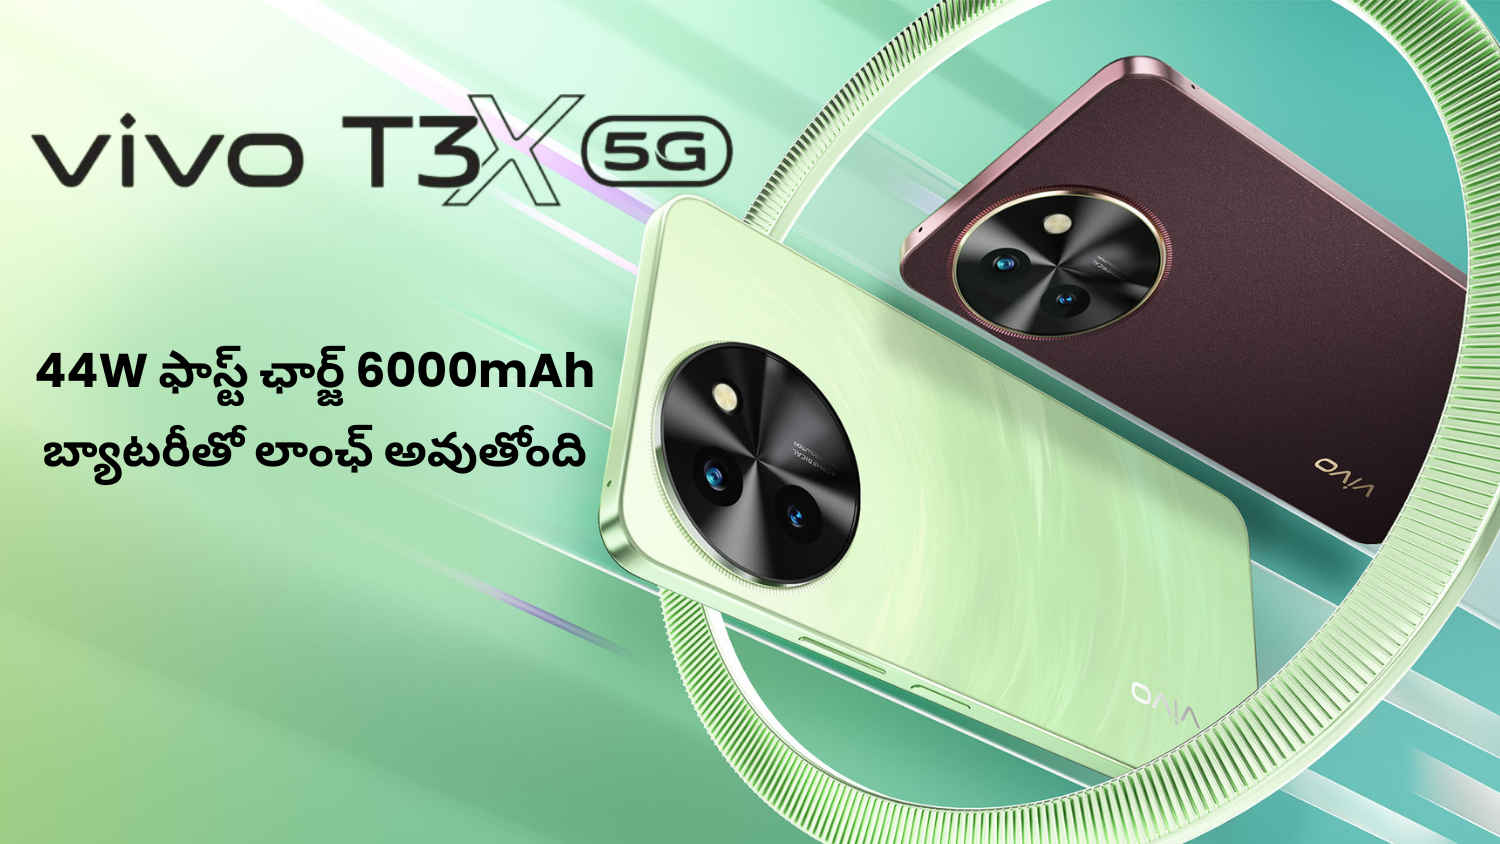 Vivo T3X 5G: 44W ఫాస్ట్ ఛార్జ్ 6000mAh బ్యాటరీతో లాంఛ్ అవుతోంది.!